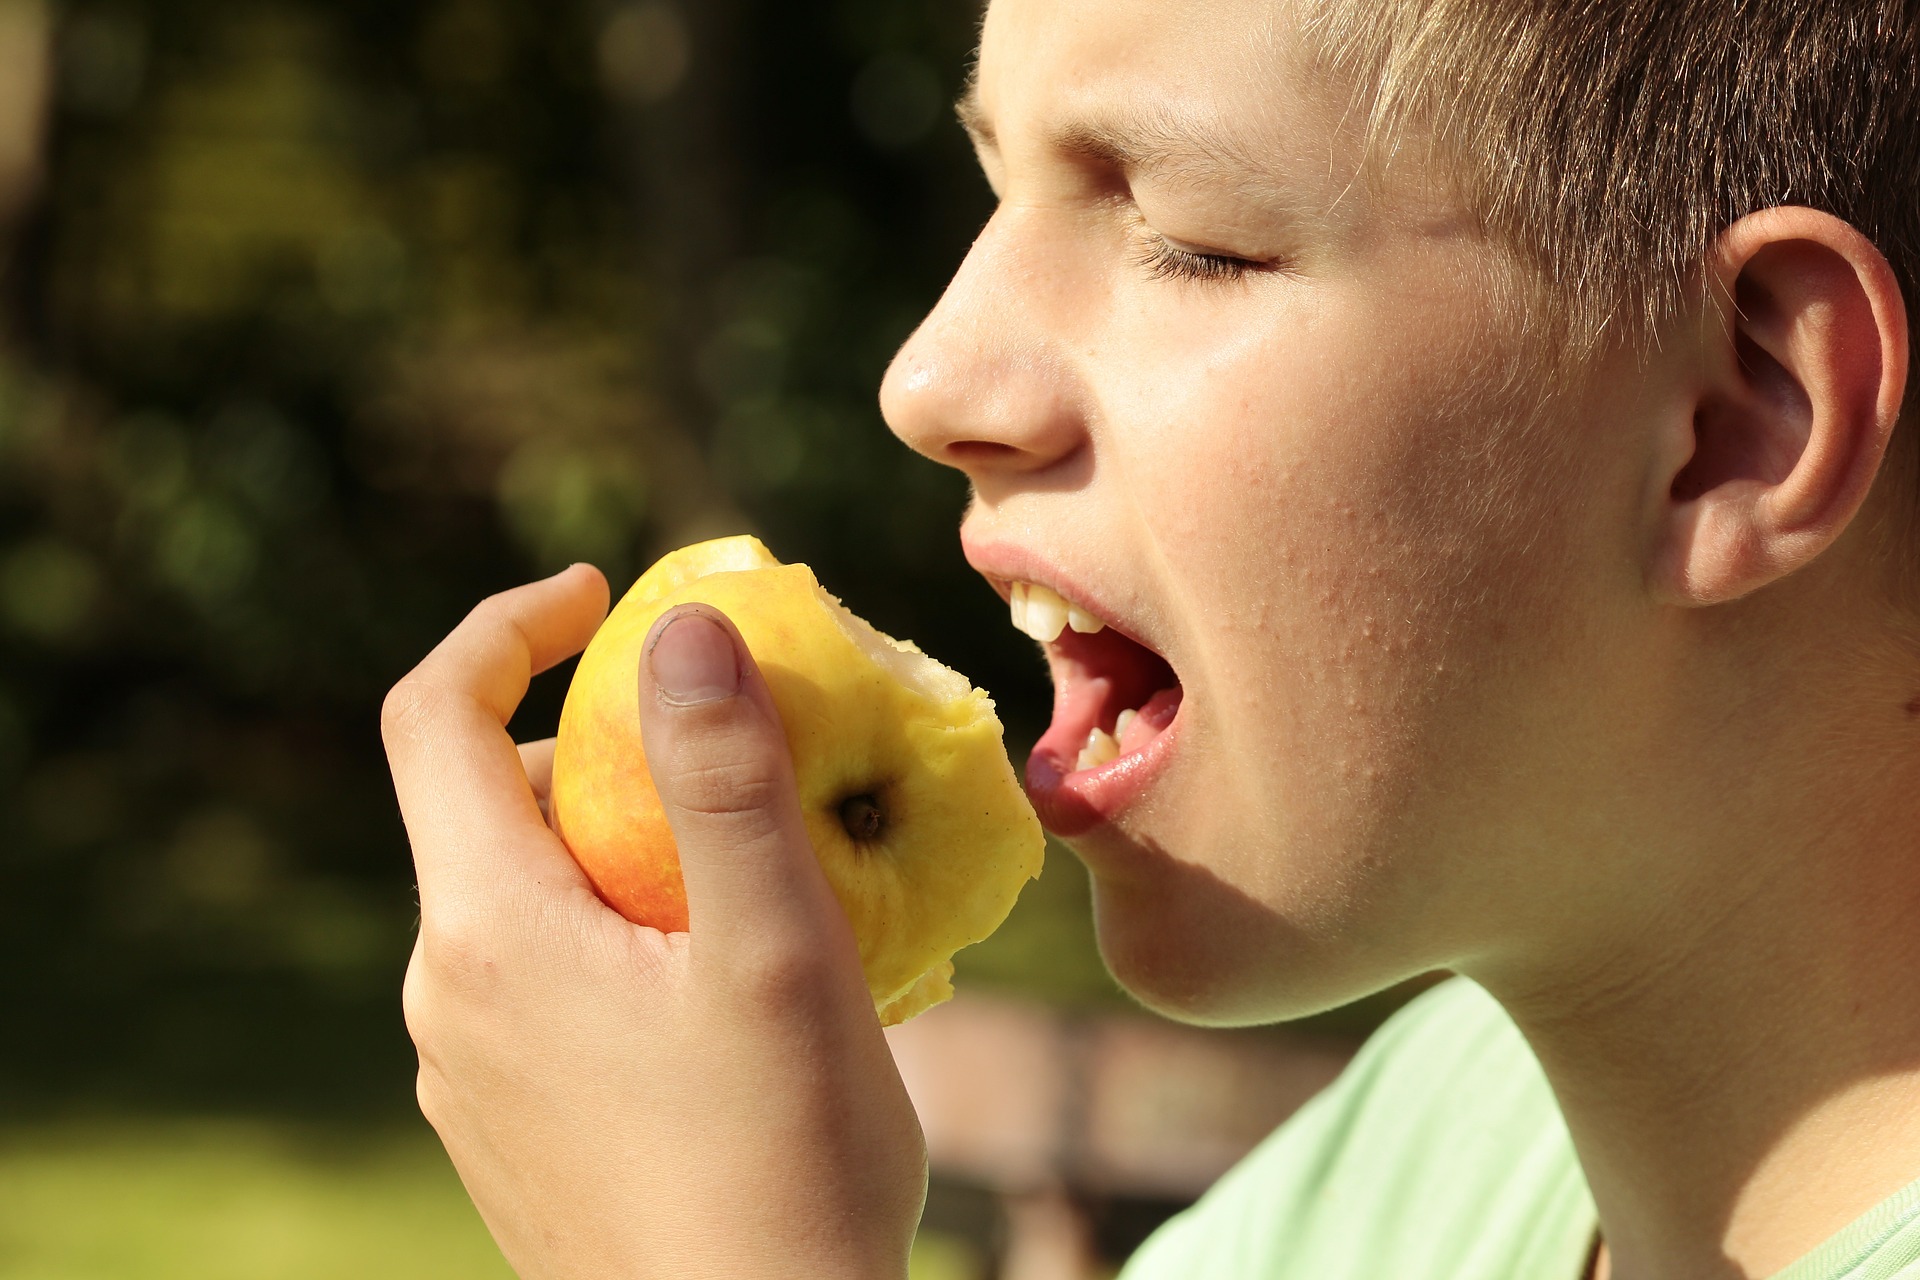 El sonido que se produce al masticar una manzana puede ser un suplicio para una persona con misofonía.